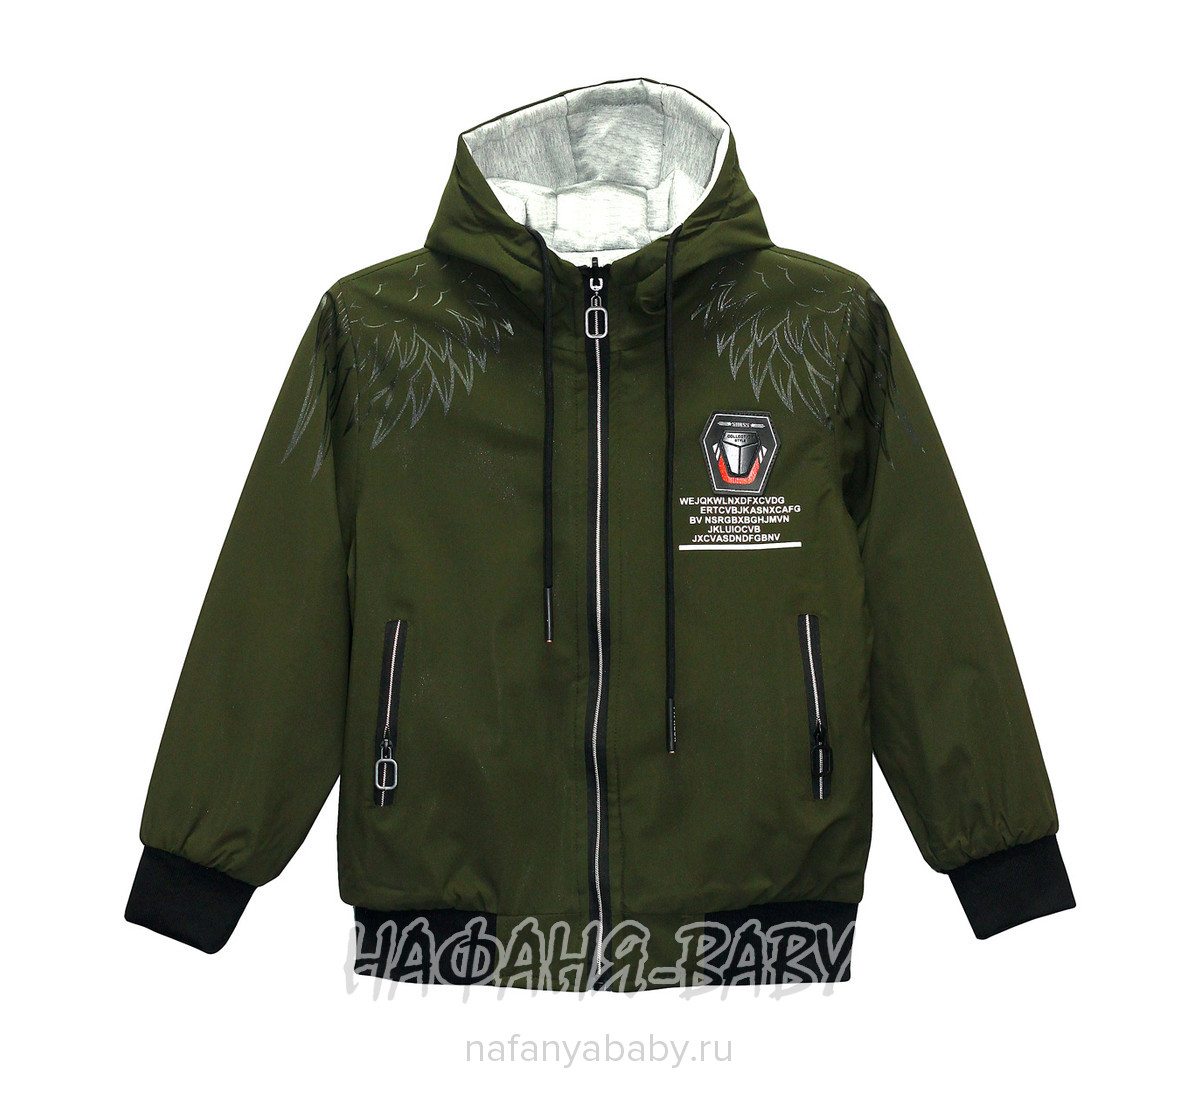 Демисезонная двусторонняя куртка POPULAR, купить в интернет магазине Нафаня. арт: 1830.